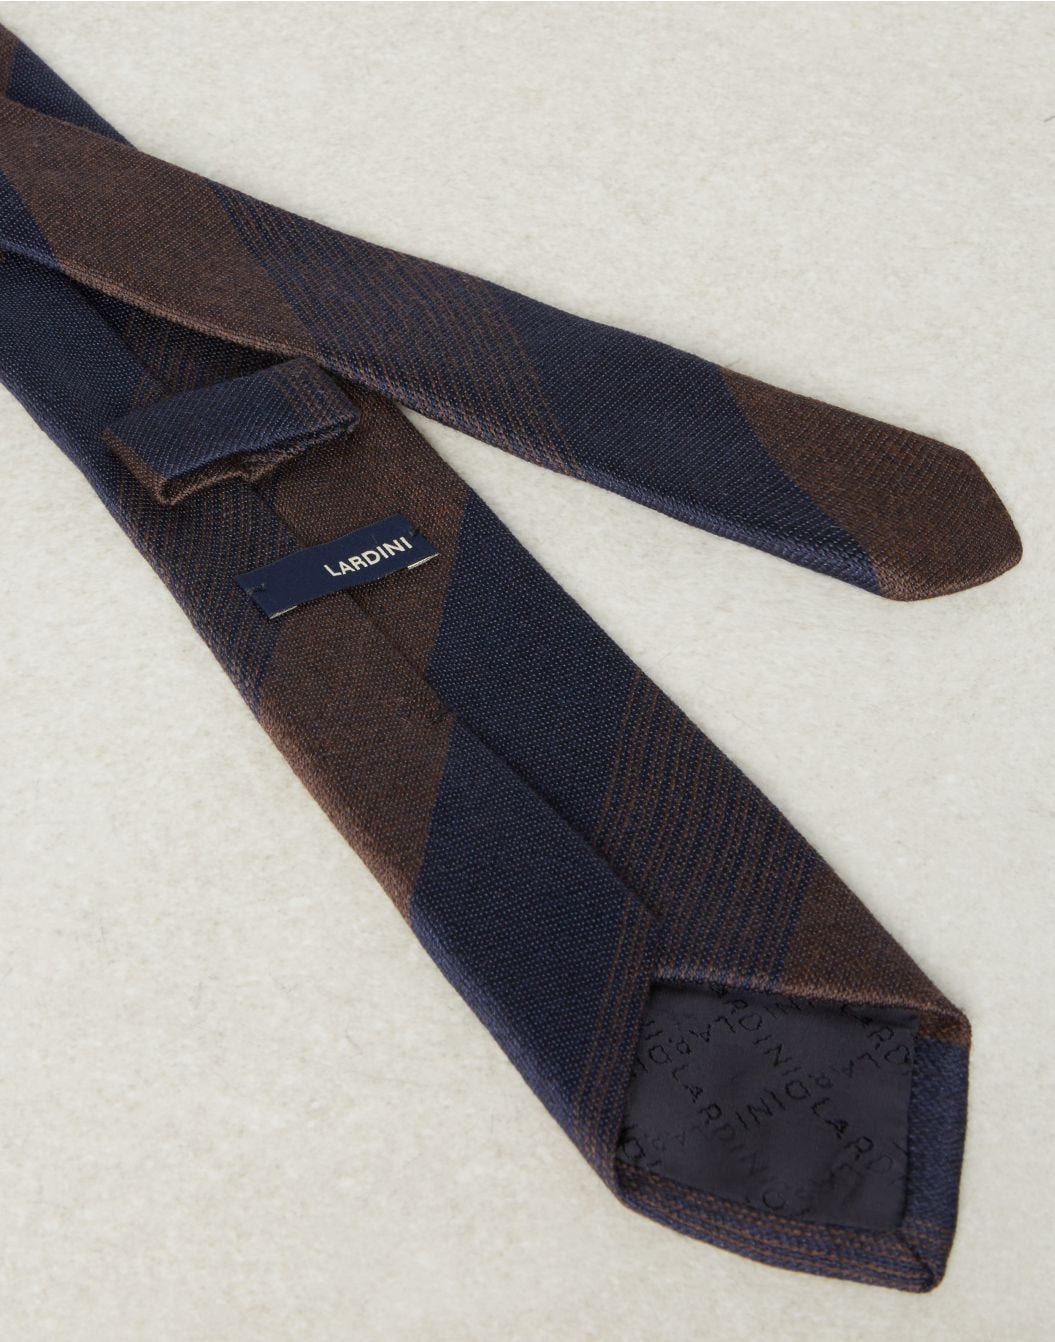 Cravate classique regimental marron et bleue